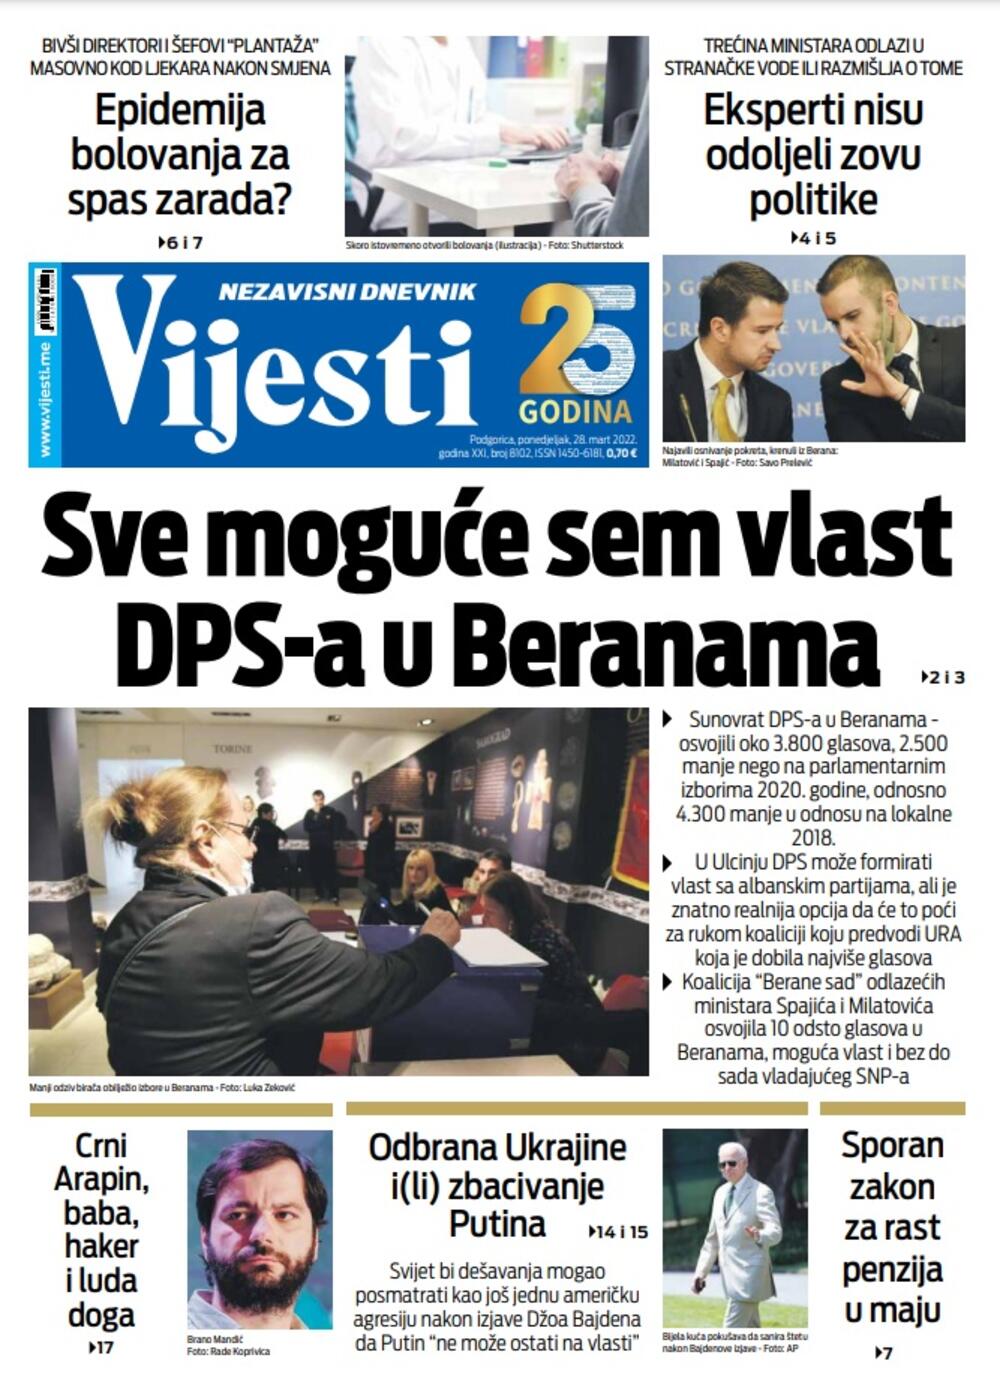 Naslovna strana "Vijesti" za 28. mart 2022., Foto: Vijesti